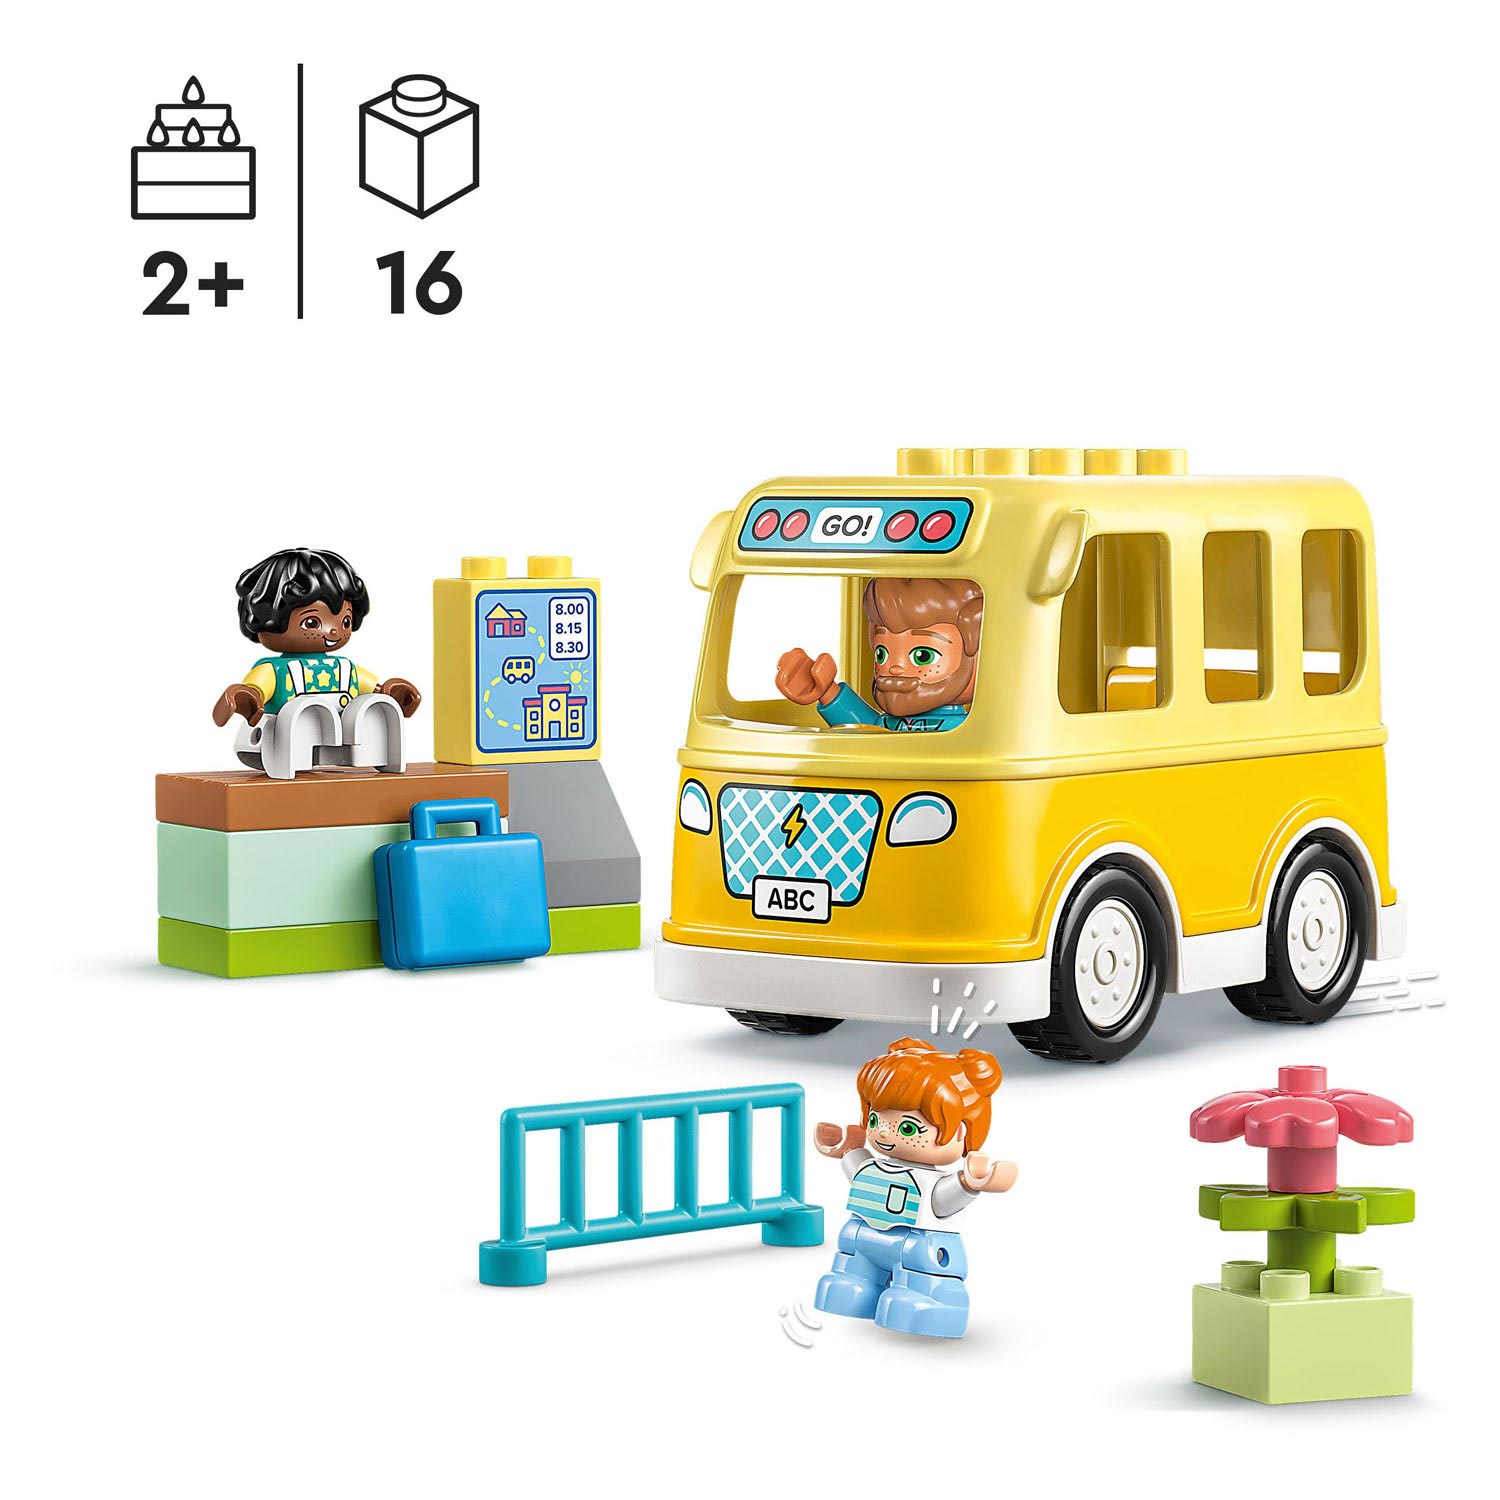 LEGO Duplo Town 10988 Le trajet en bus